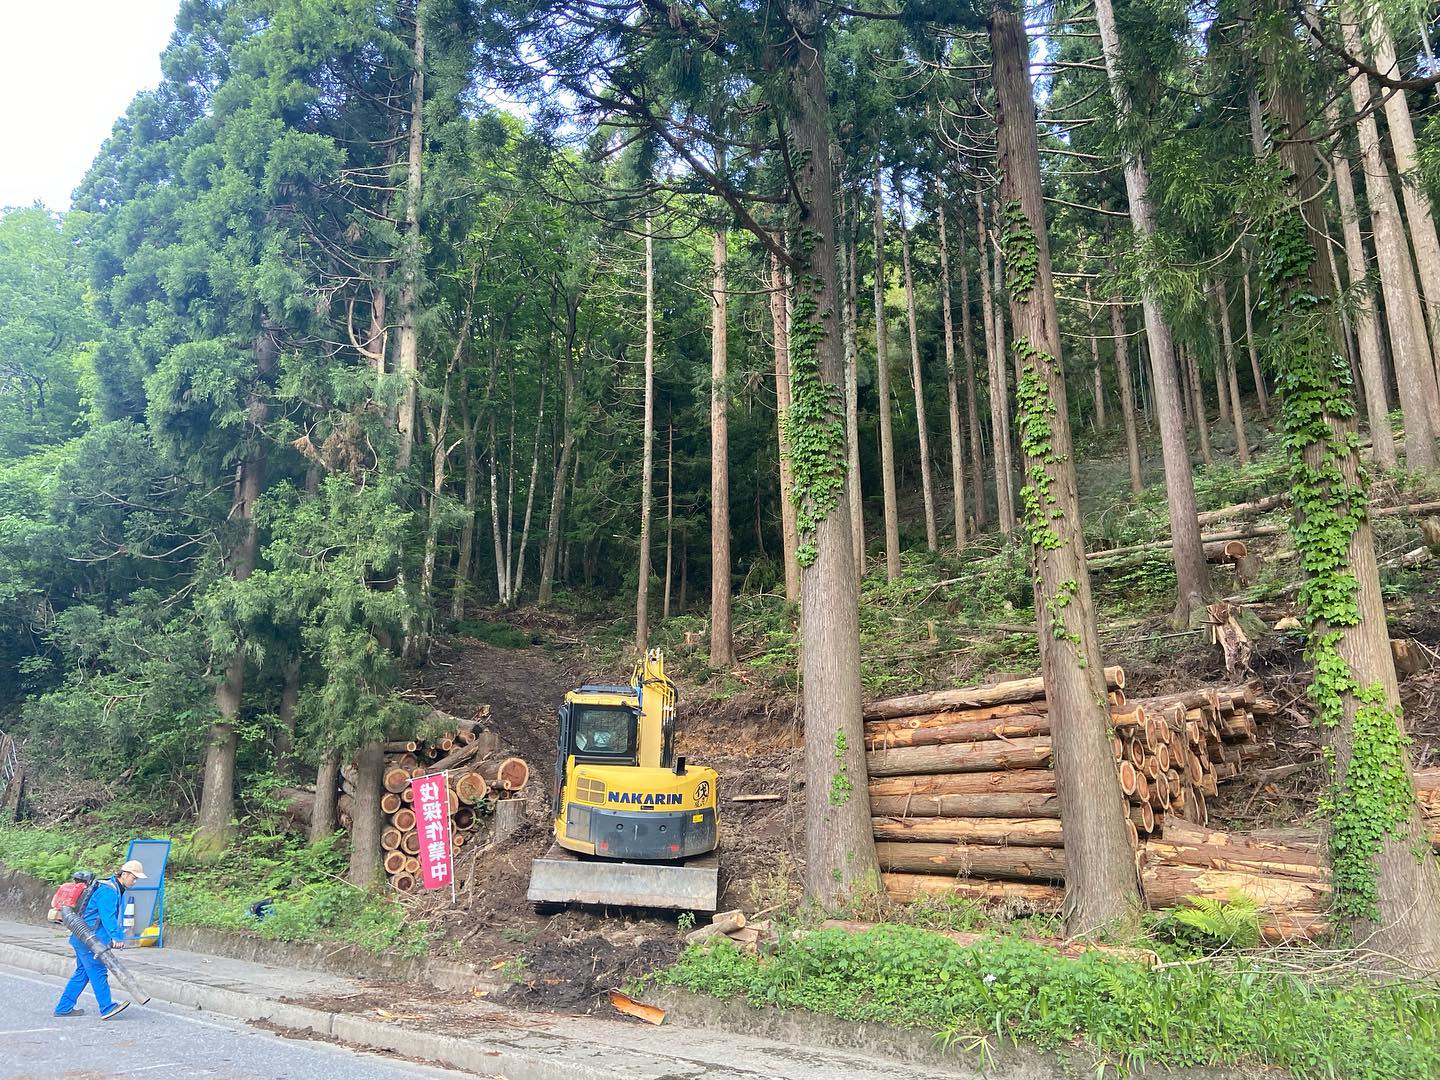 おはようございます中直海地区間伐工2ヶ所目、順調です#伐採#特殊伐採#林業#間伐#石川県#白山市#金沢市#鶴来#なかの林業